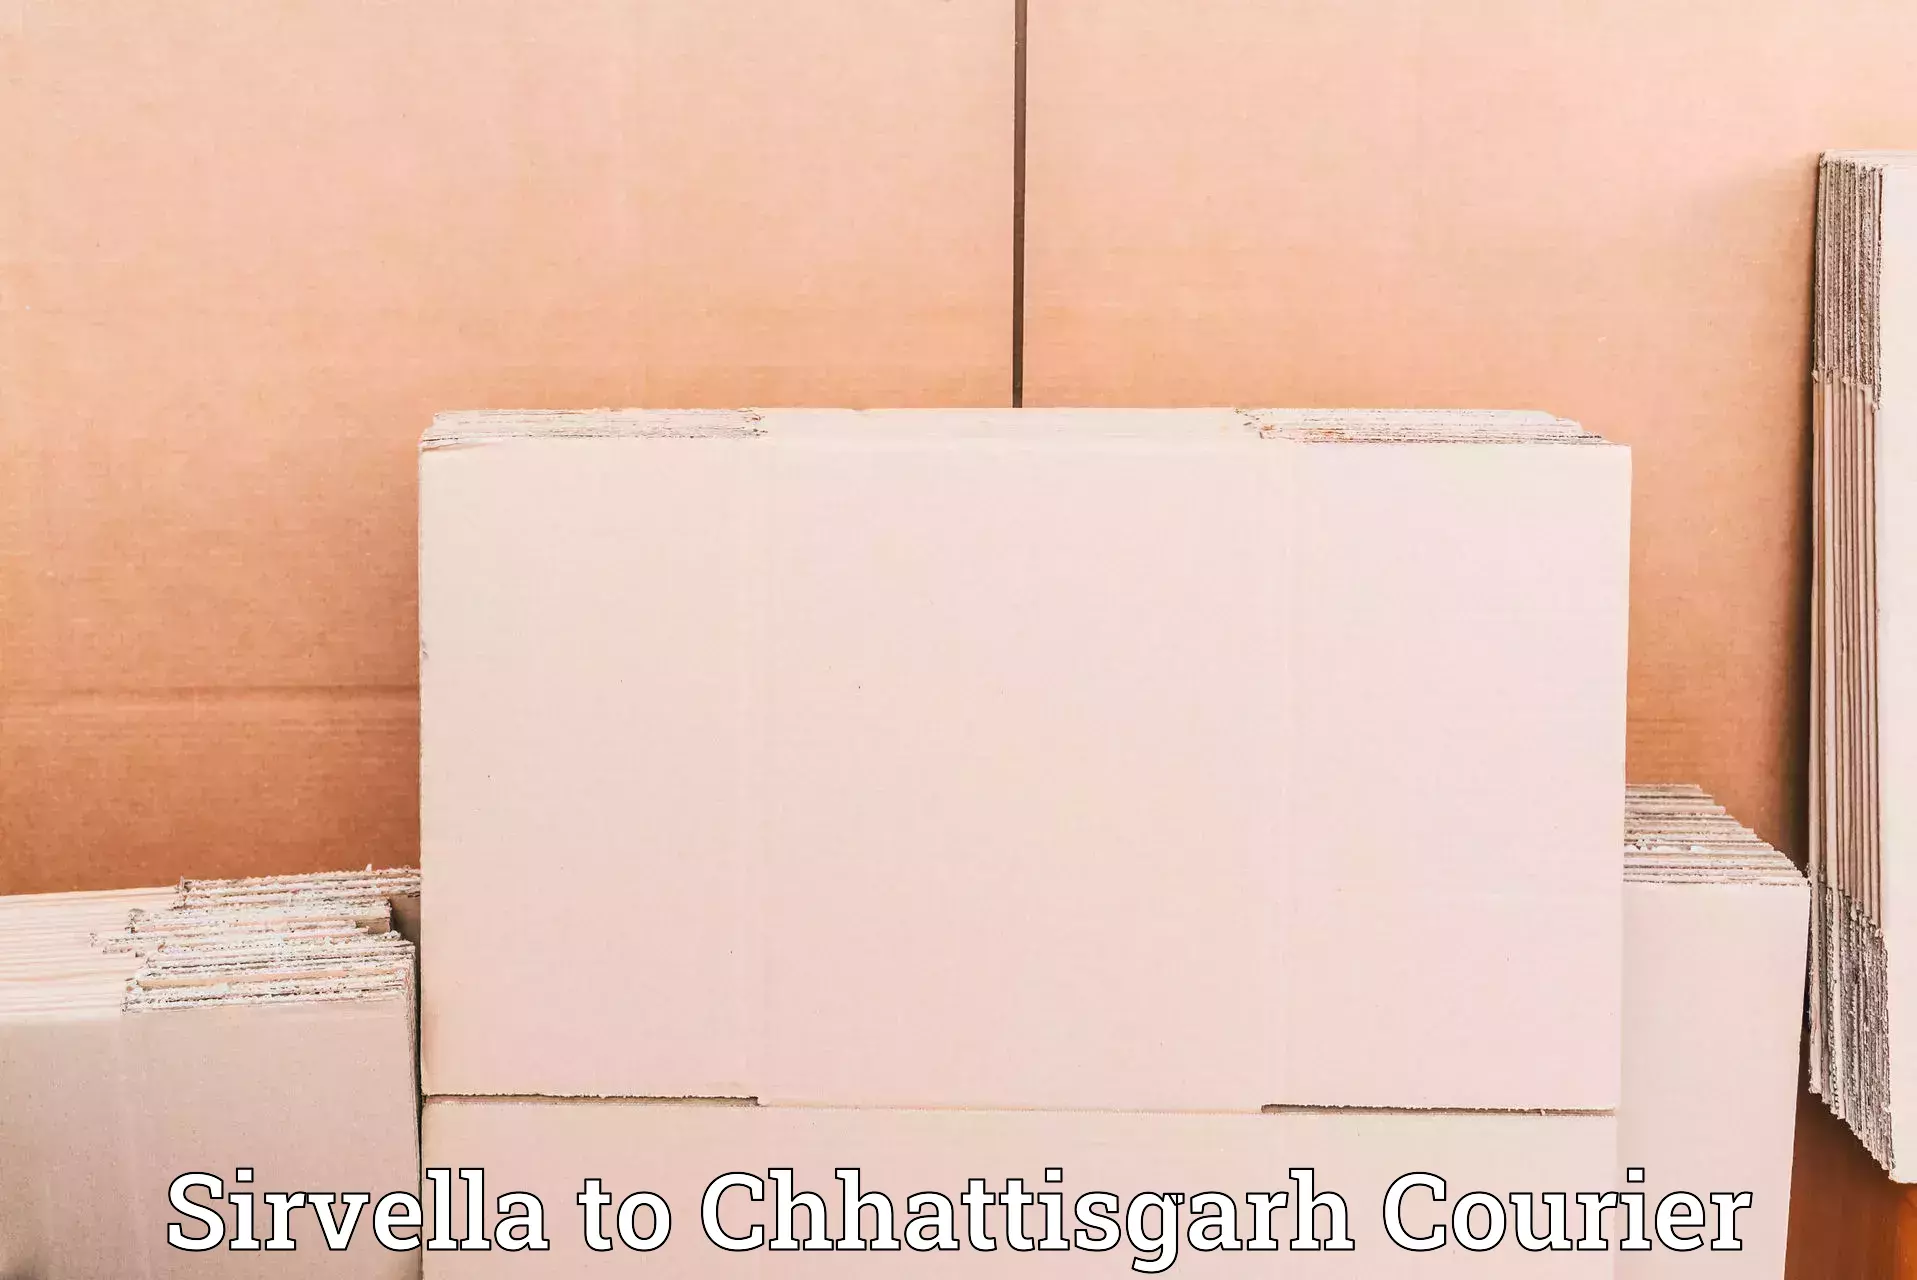 Cash on delivery service Sirvella to Chhattisgarh